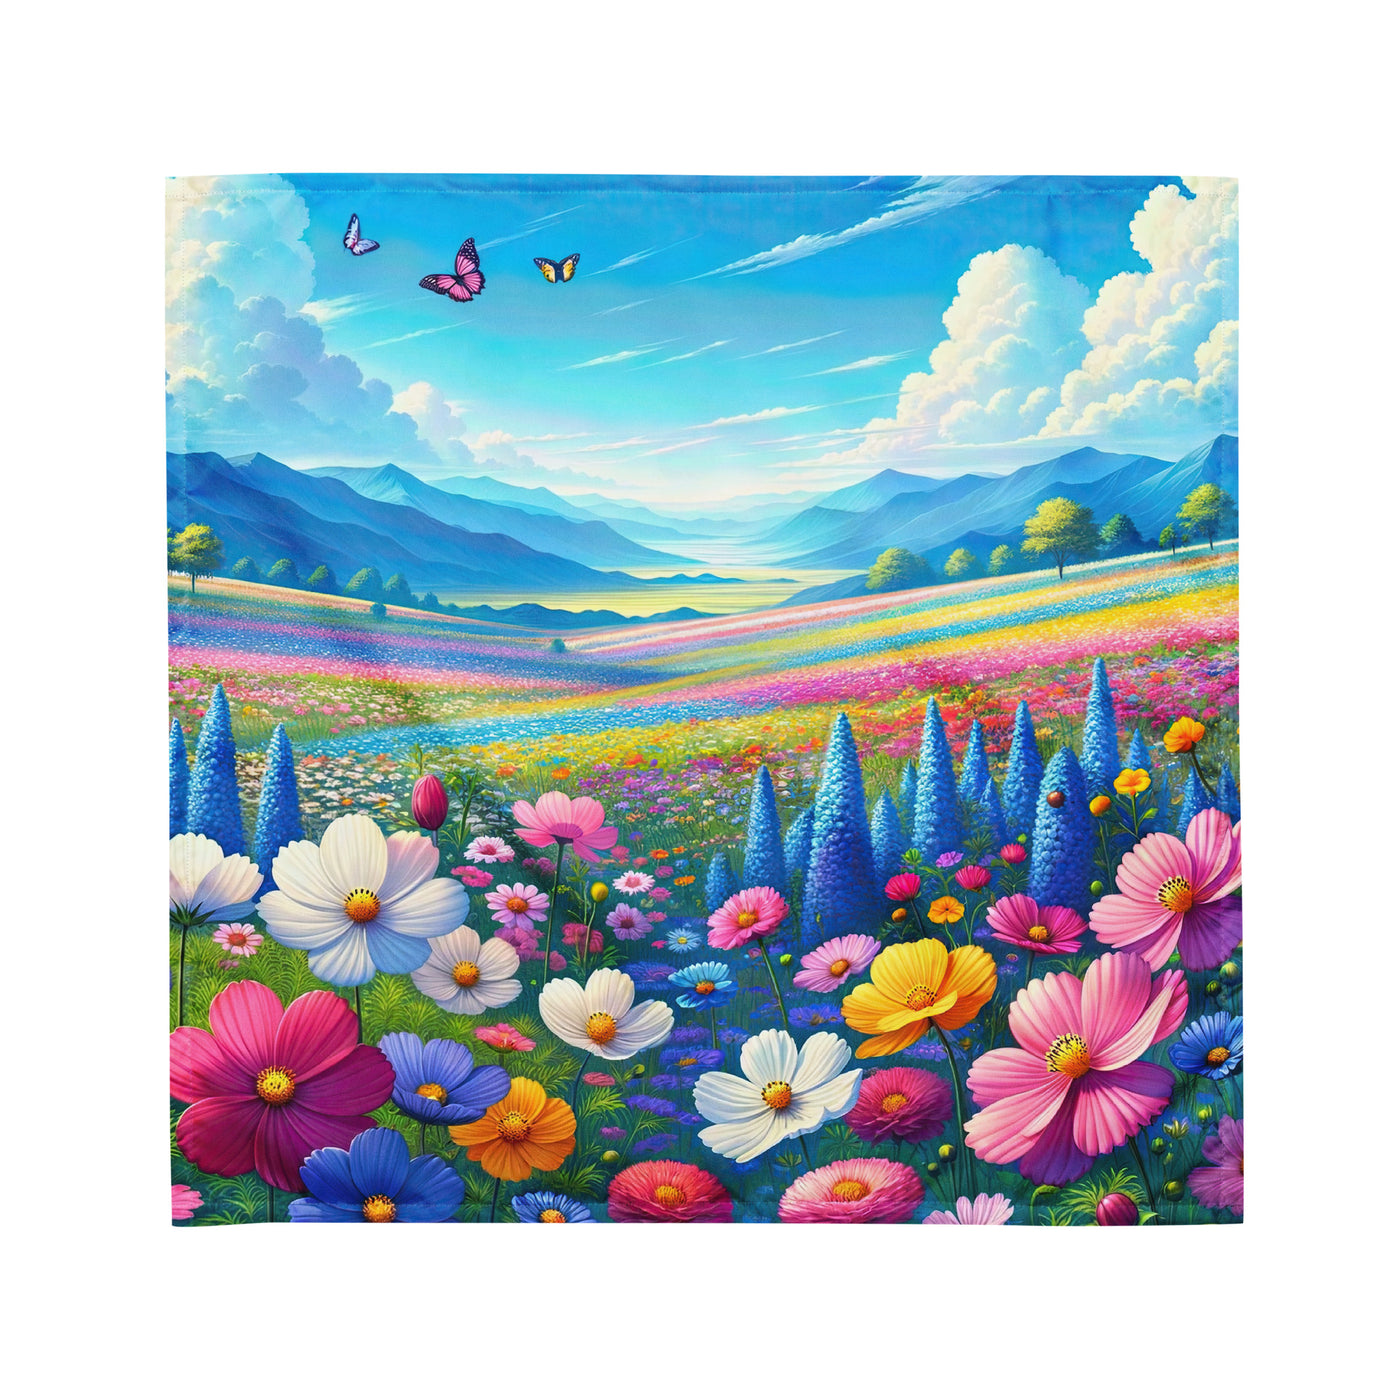 Weitläufiges Blumenfeld unter himmelblauem Himmel, leuchtende Flora - Bandana (All-Over Print) camping xxx yyy zzz M